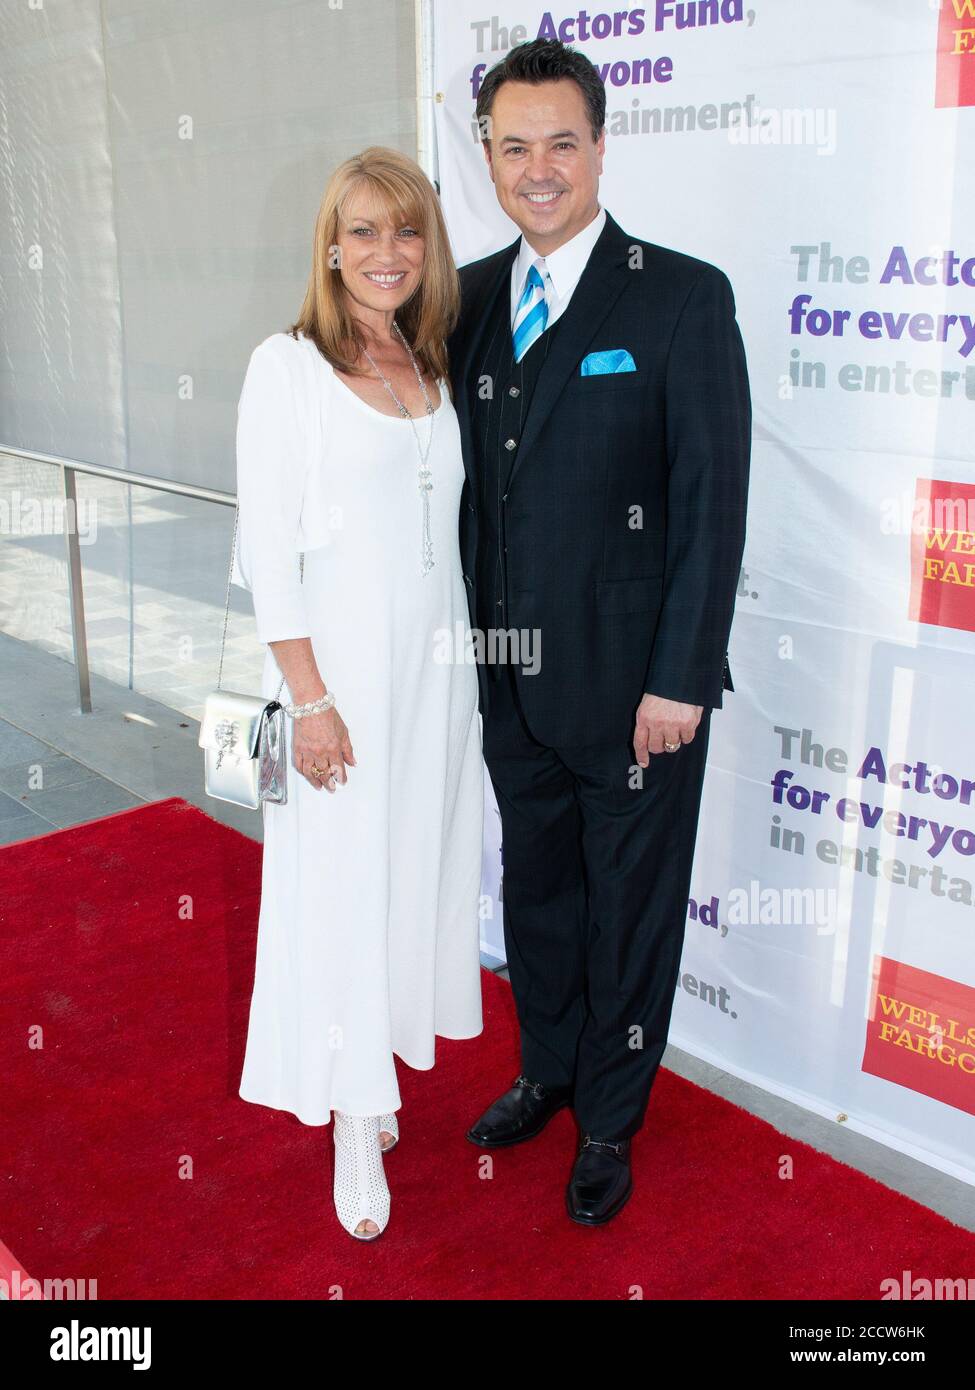 8 giugno 2014, Los Angeles, California, USA: Erin Pennacchio e George Pennacchio partecipano al 18° Tony Awards Party annuale del Fondo attori. (Immagine di credito: © Billy Bendight/ZUMA Wire) Foto Stock